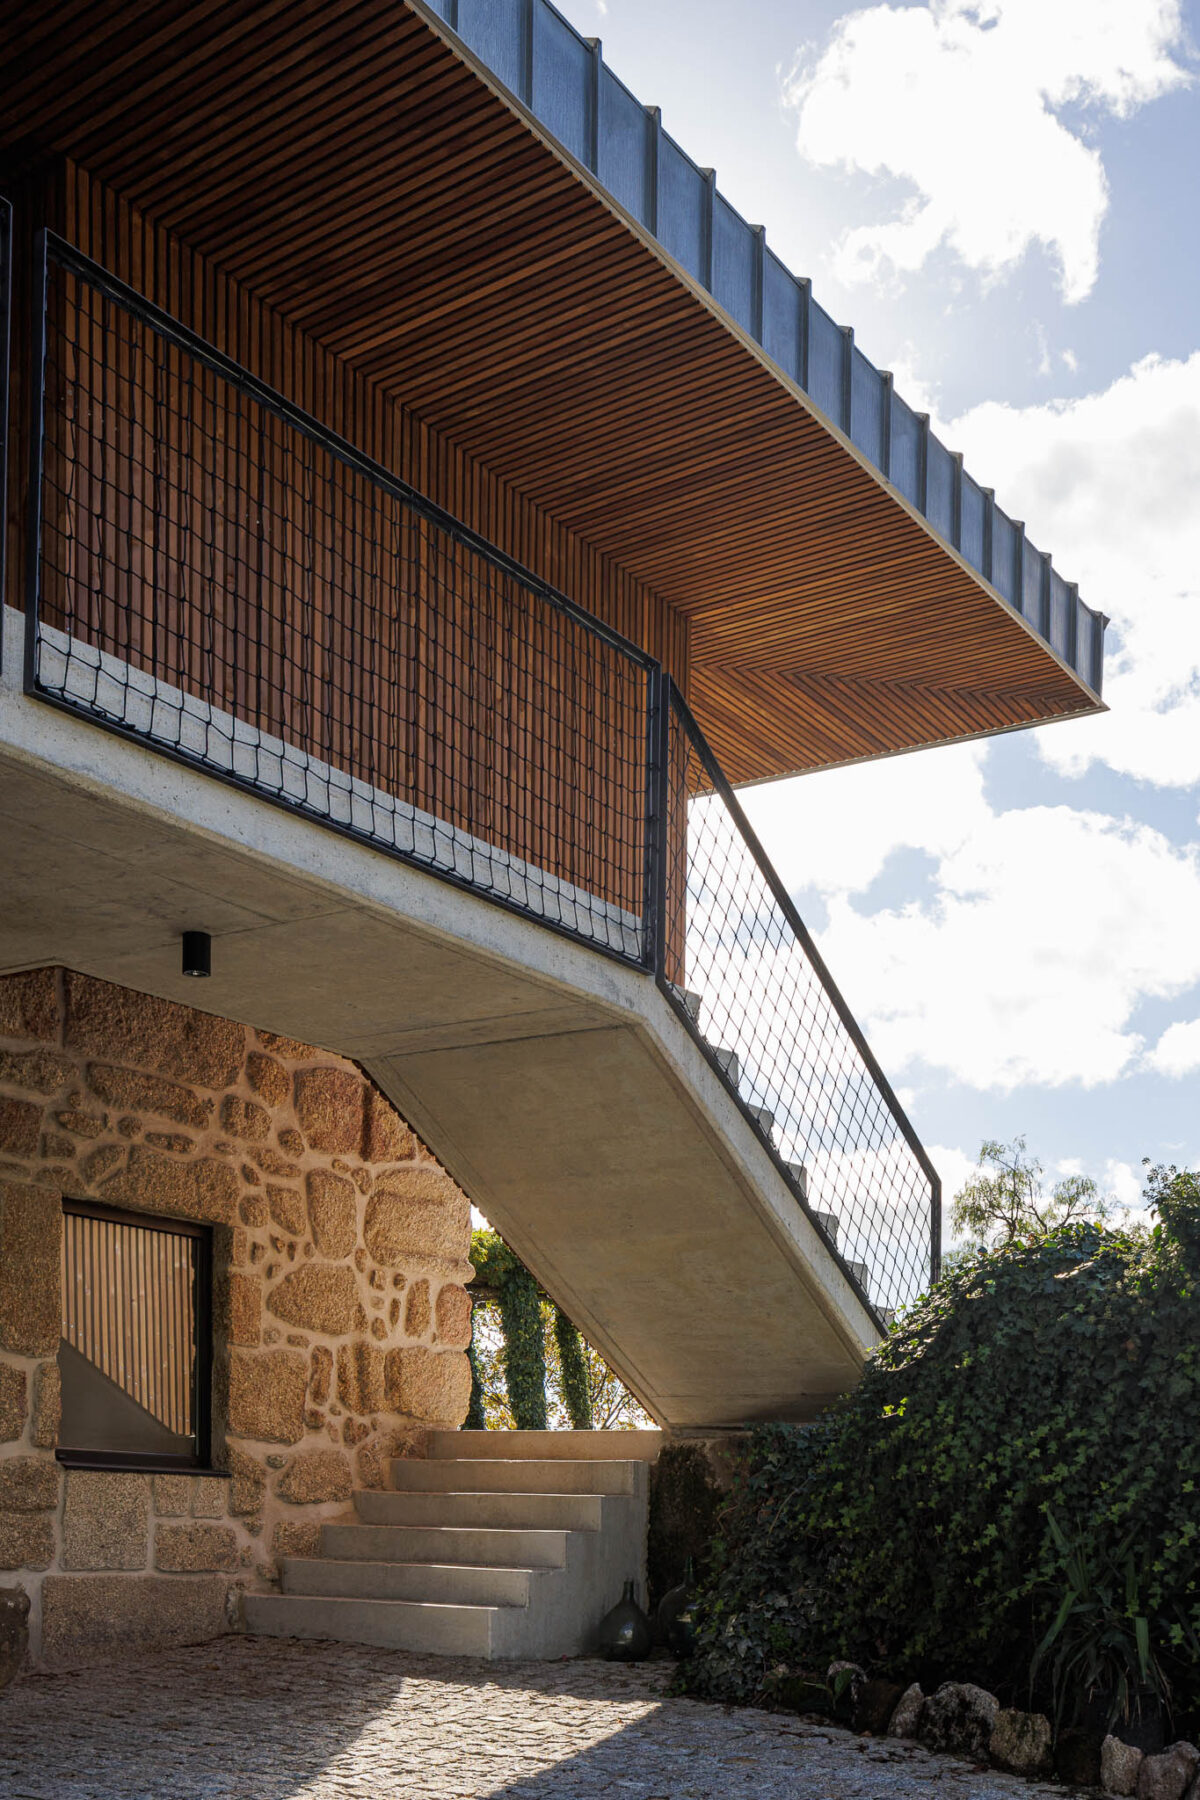 TheVagar Countryhouse em Belmonte com arquitetura Filipe Pina e David Bilo, fotografia Ivo Tavares studio